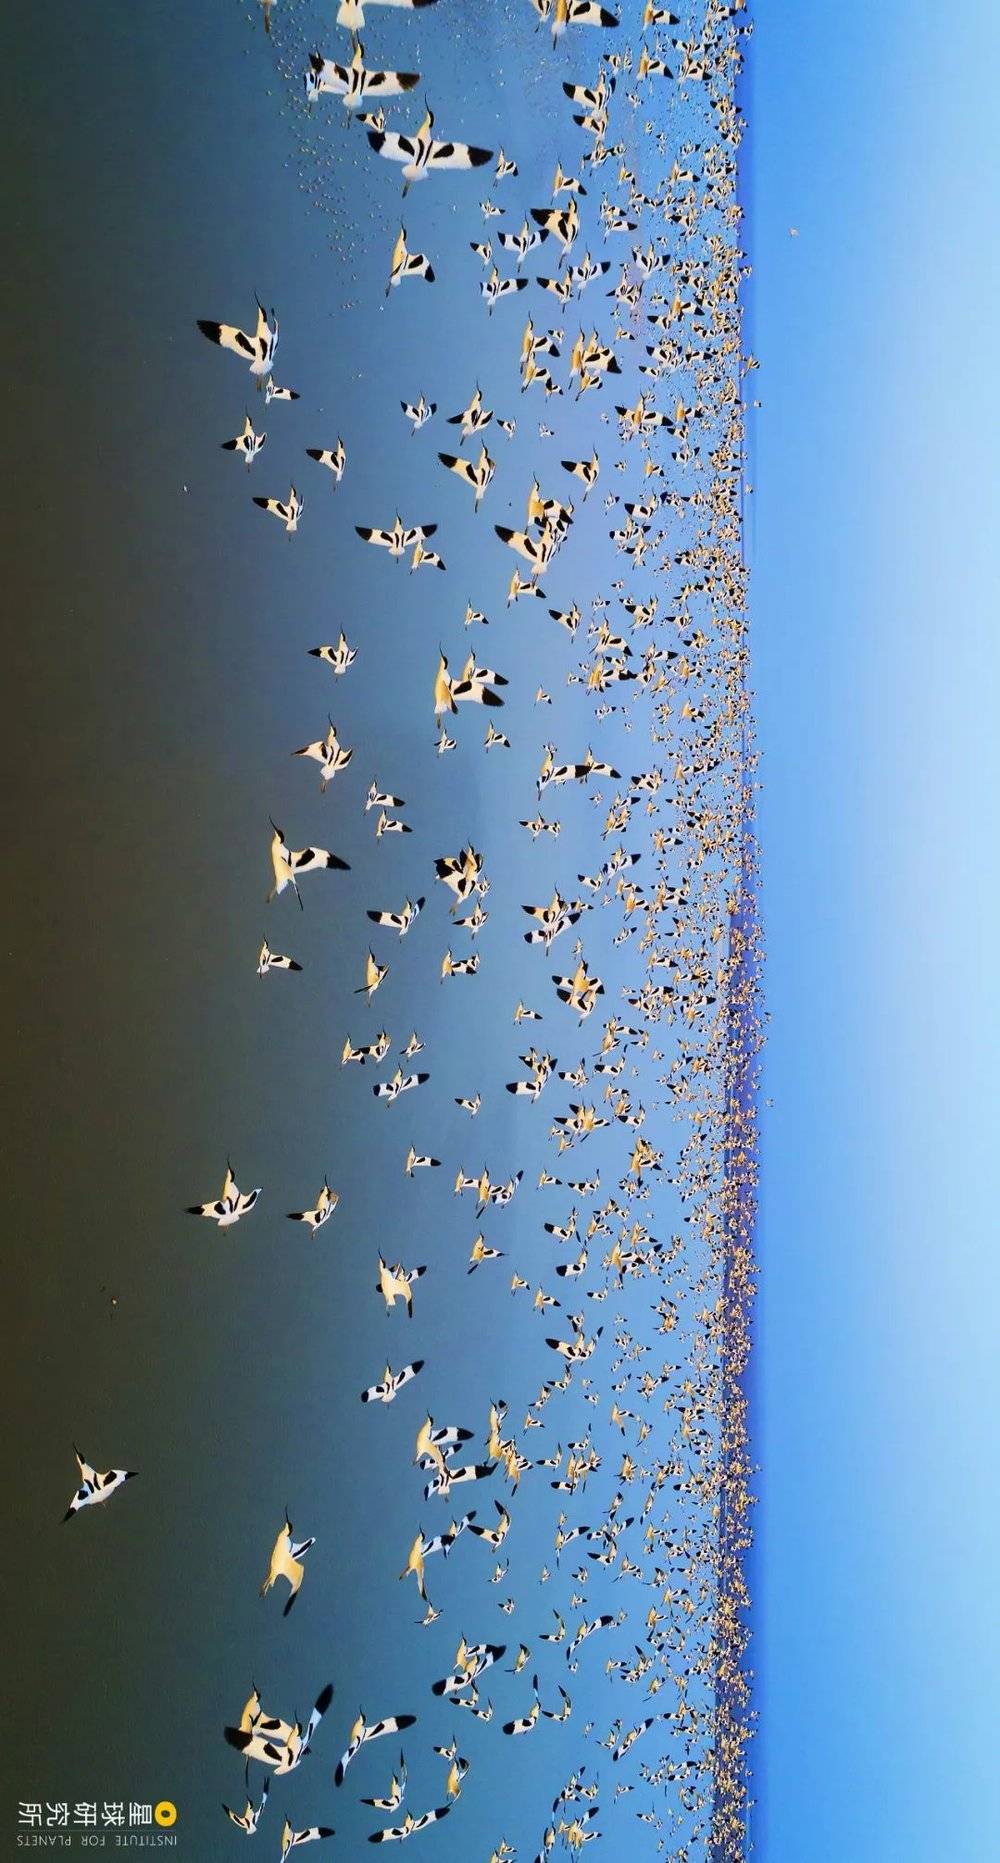 新建南矶山的反嘴鹬群；上述数据来自2022年1月鄱阳湖国家级自然保护区联合湖区其他自然保护区对整个鄱阳湖区进行的“鸟口普查”监测数据，摄影师@廖士清